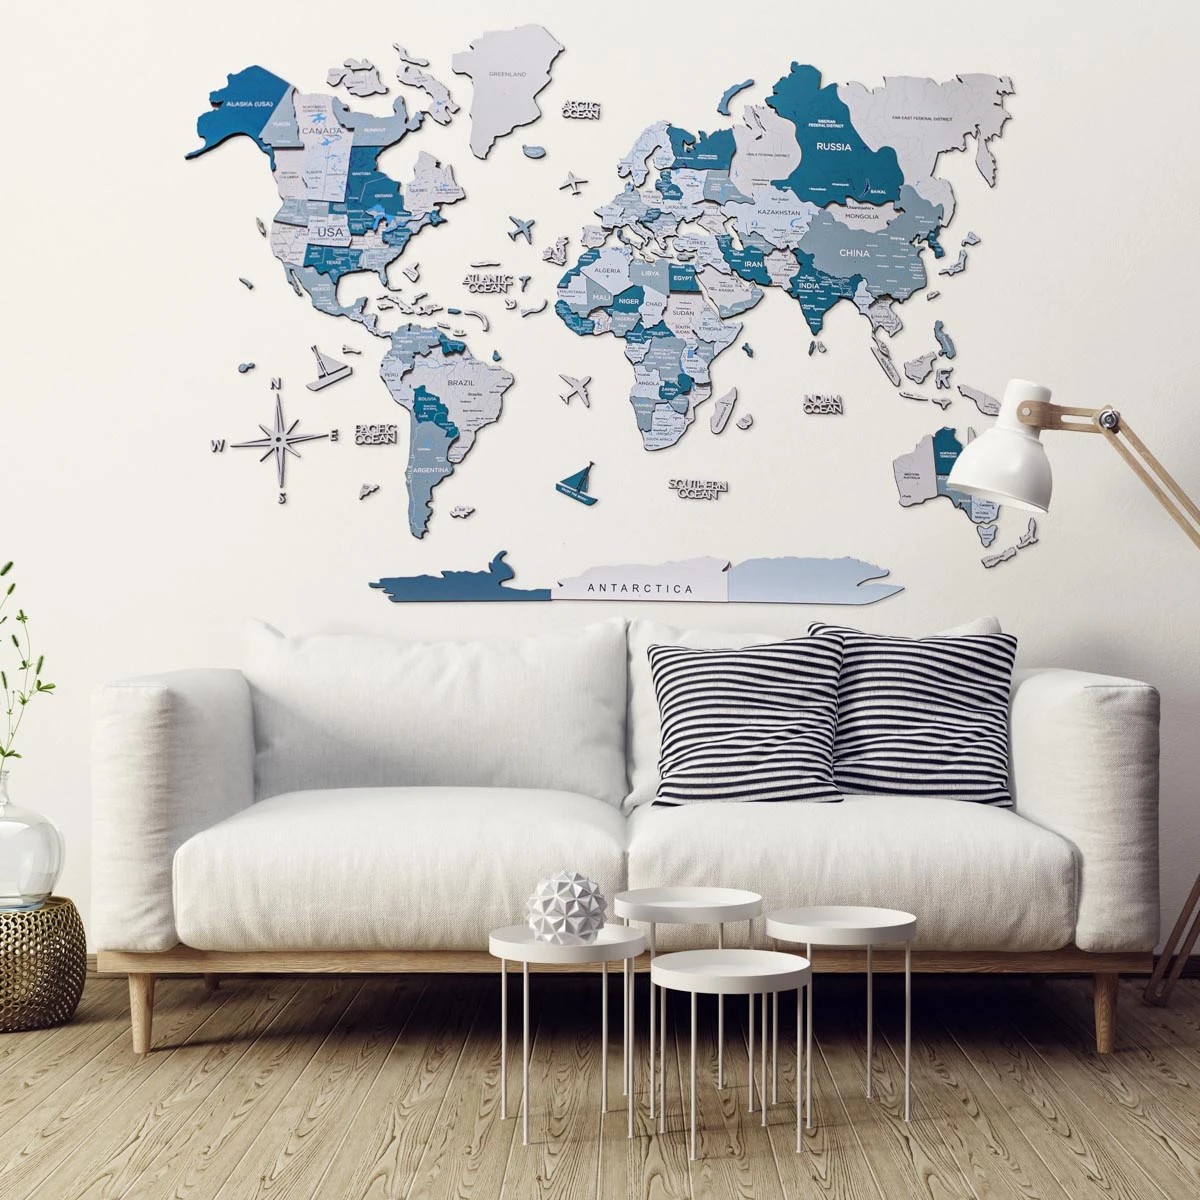 خريطة العالم خشبية كبيرة